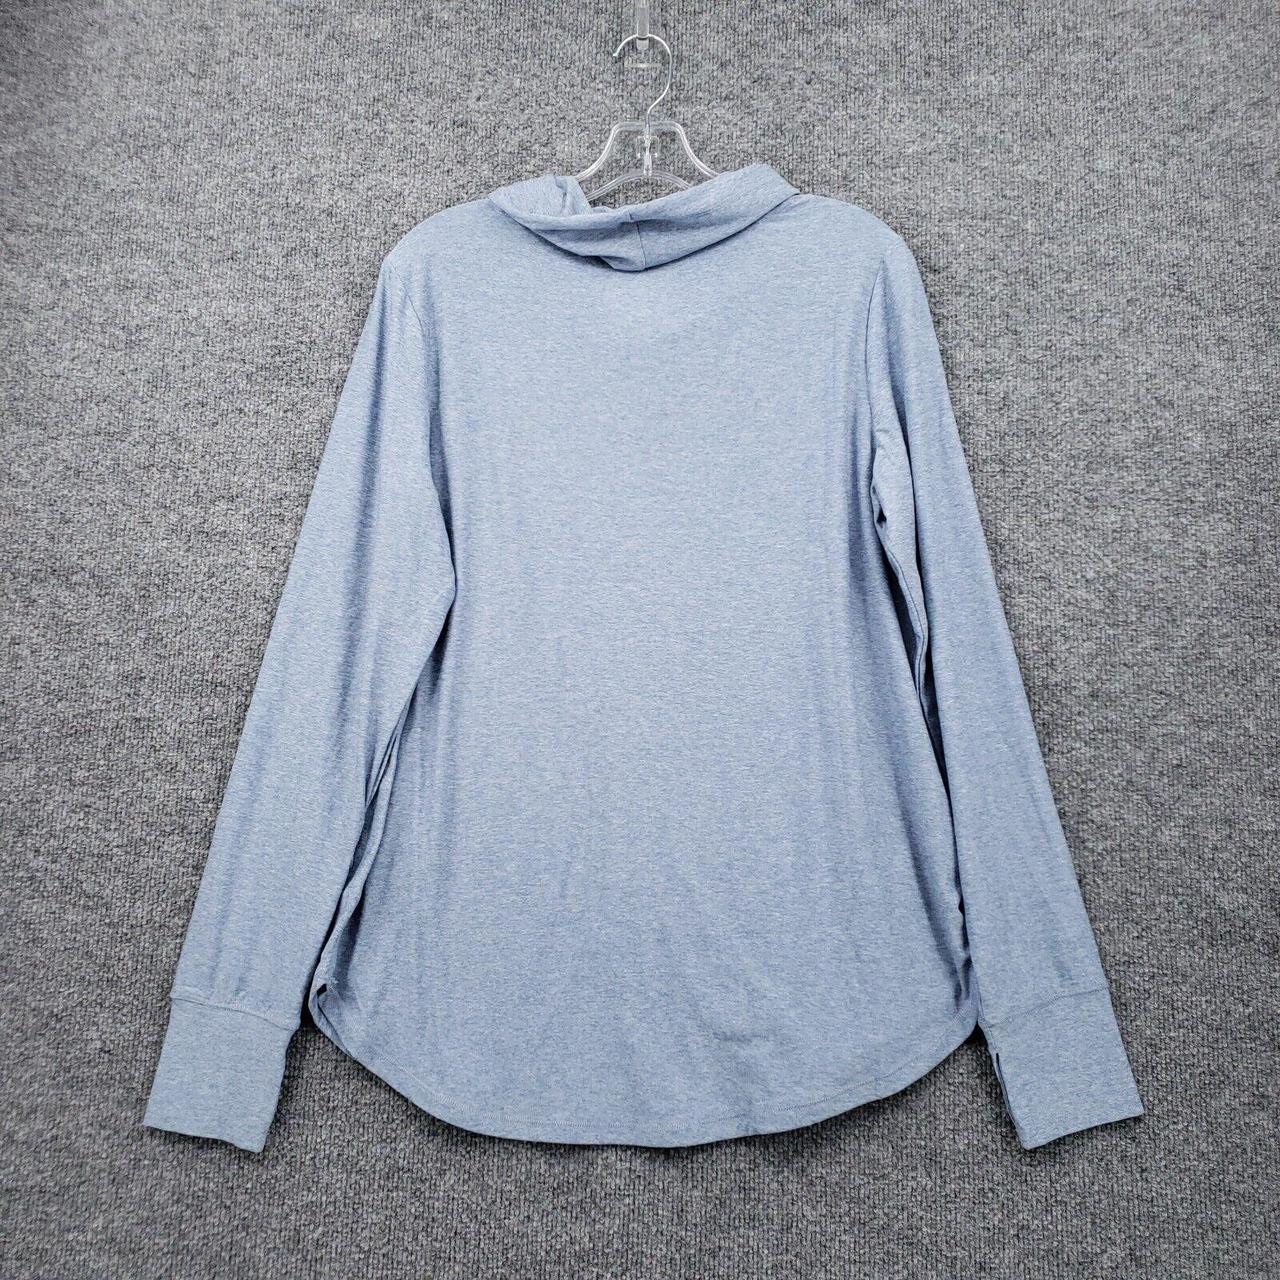 Market Women's Blue Sweatshirt (2)